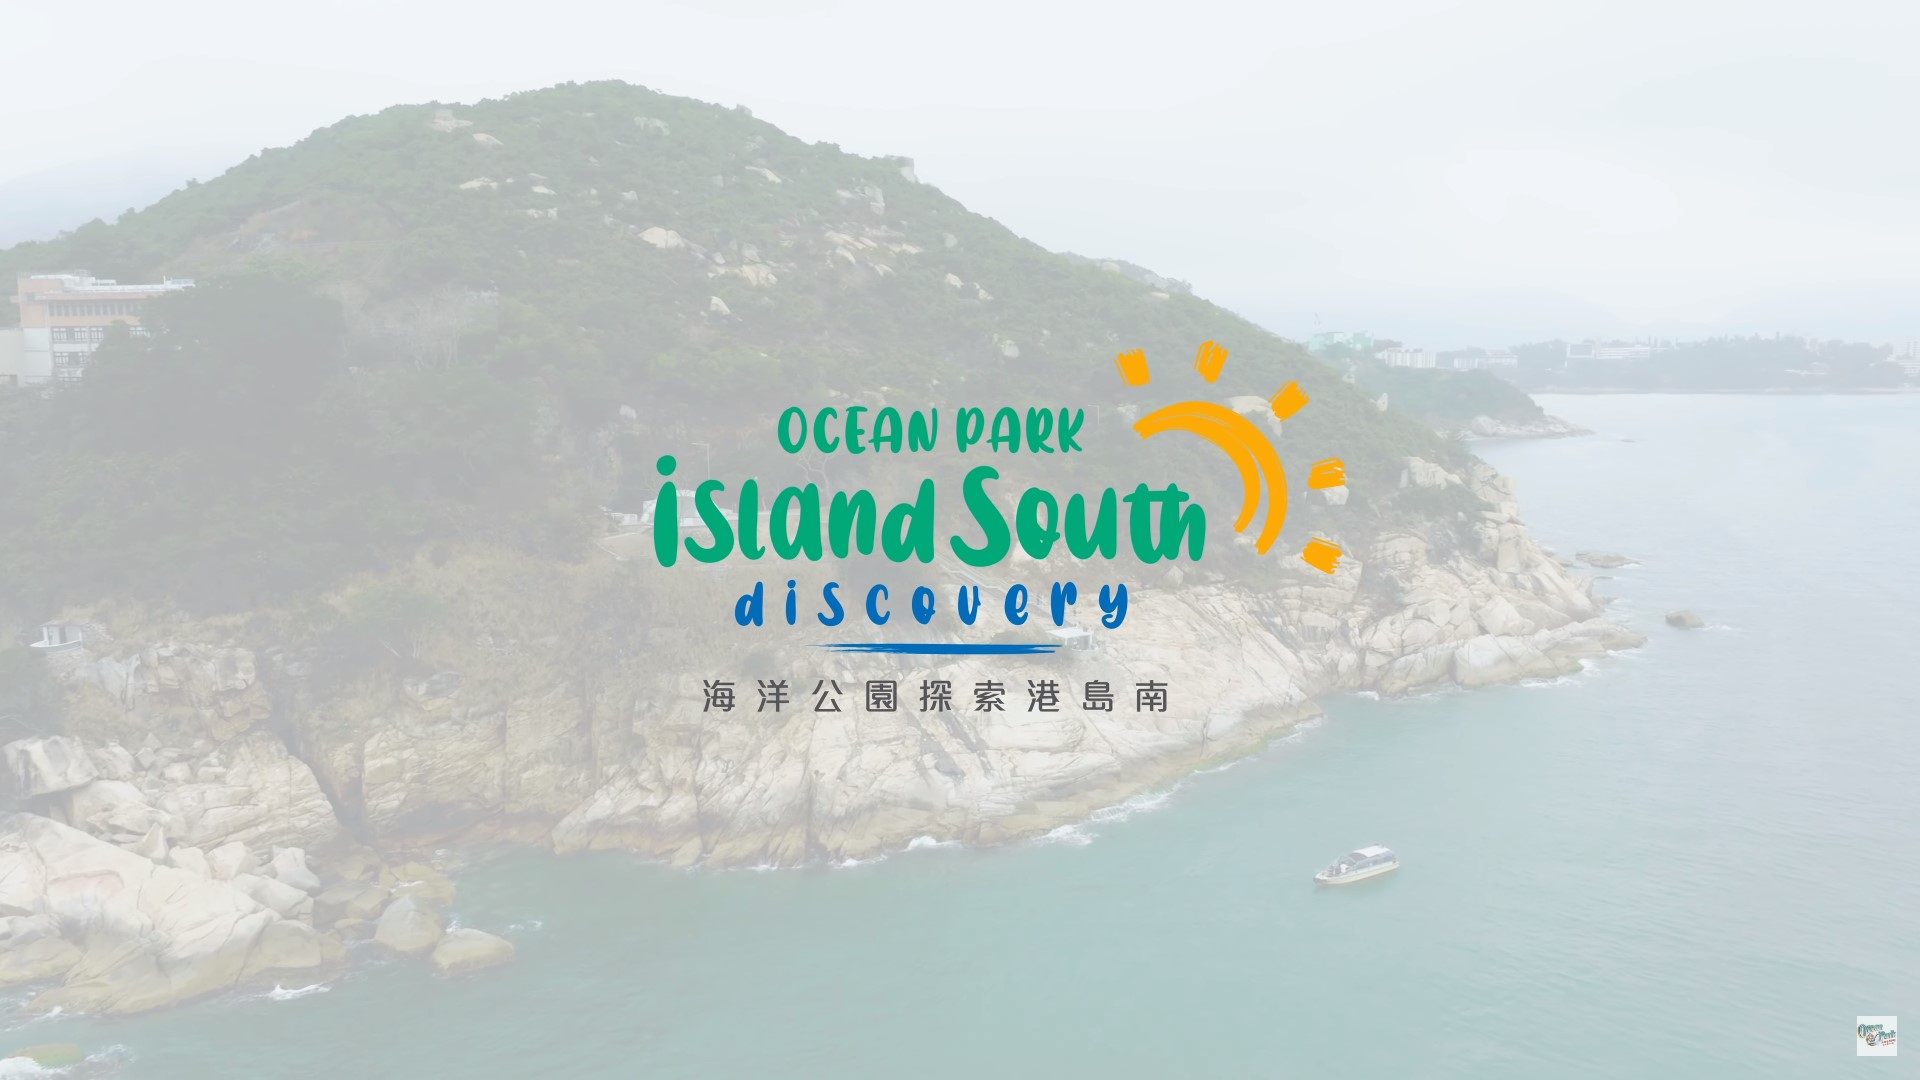 Ocean Park Marine Tourism